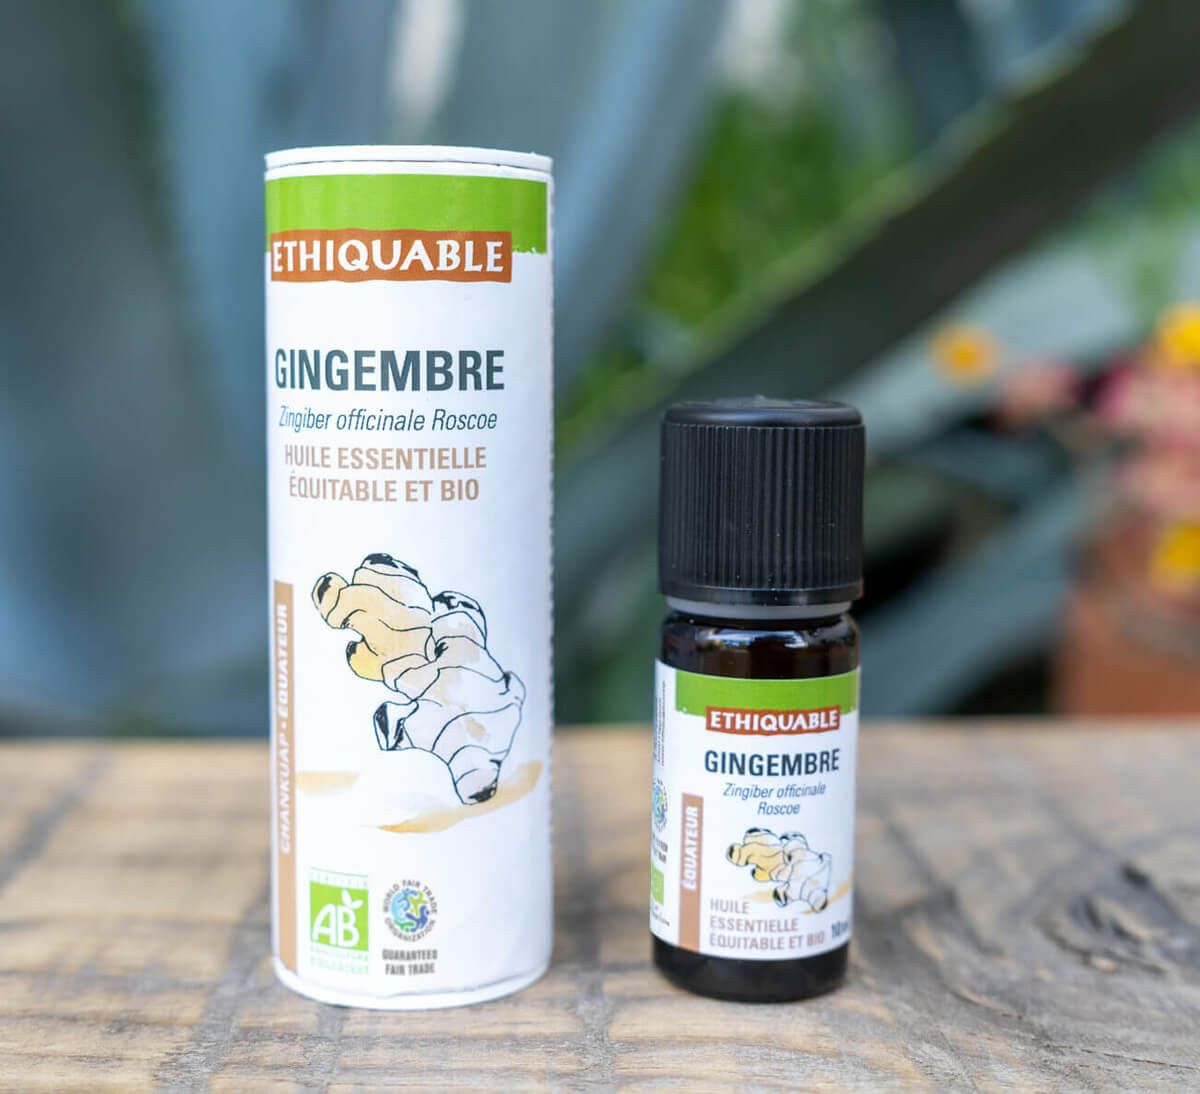 Ethiquable - Pure huile essentielle de gingembre d'Equateur équitable et bio